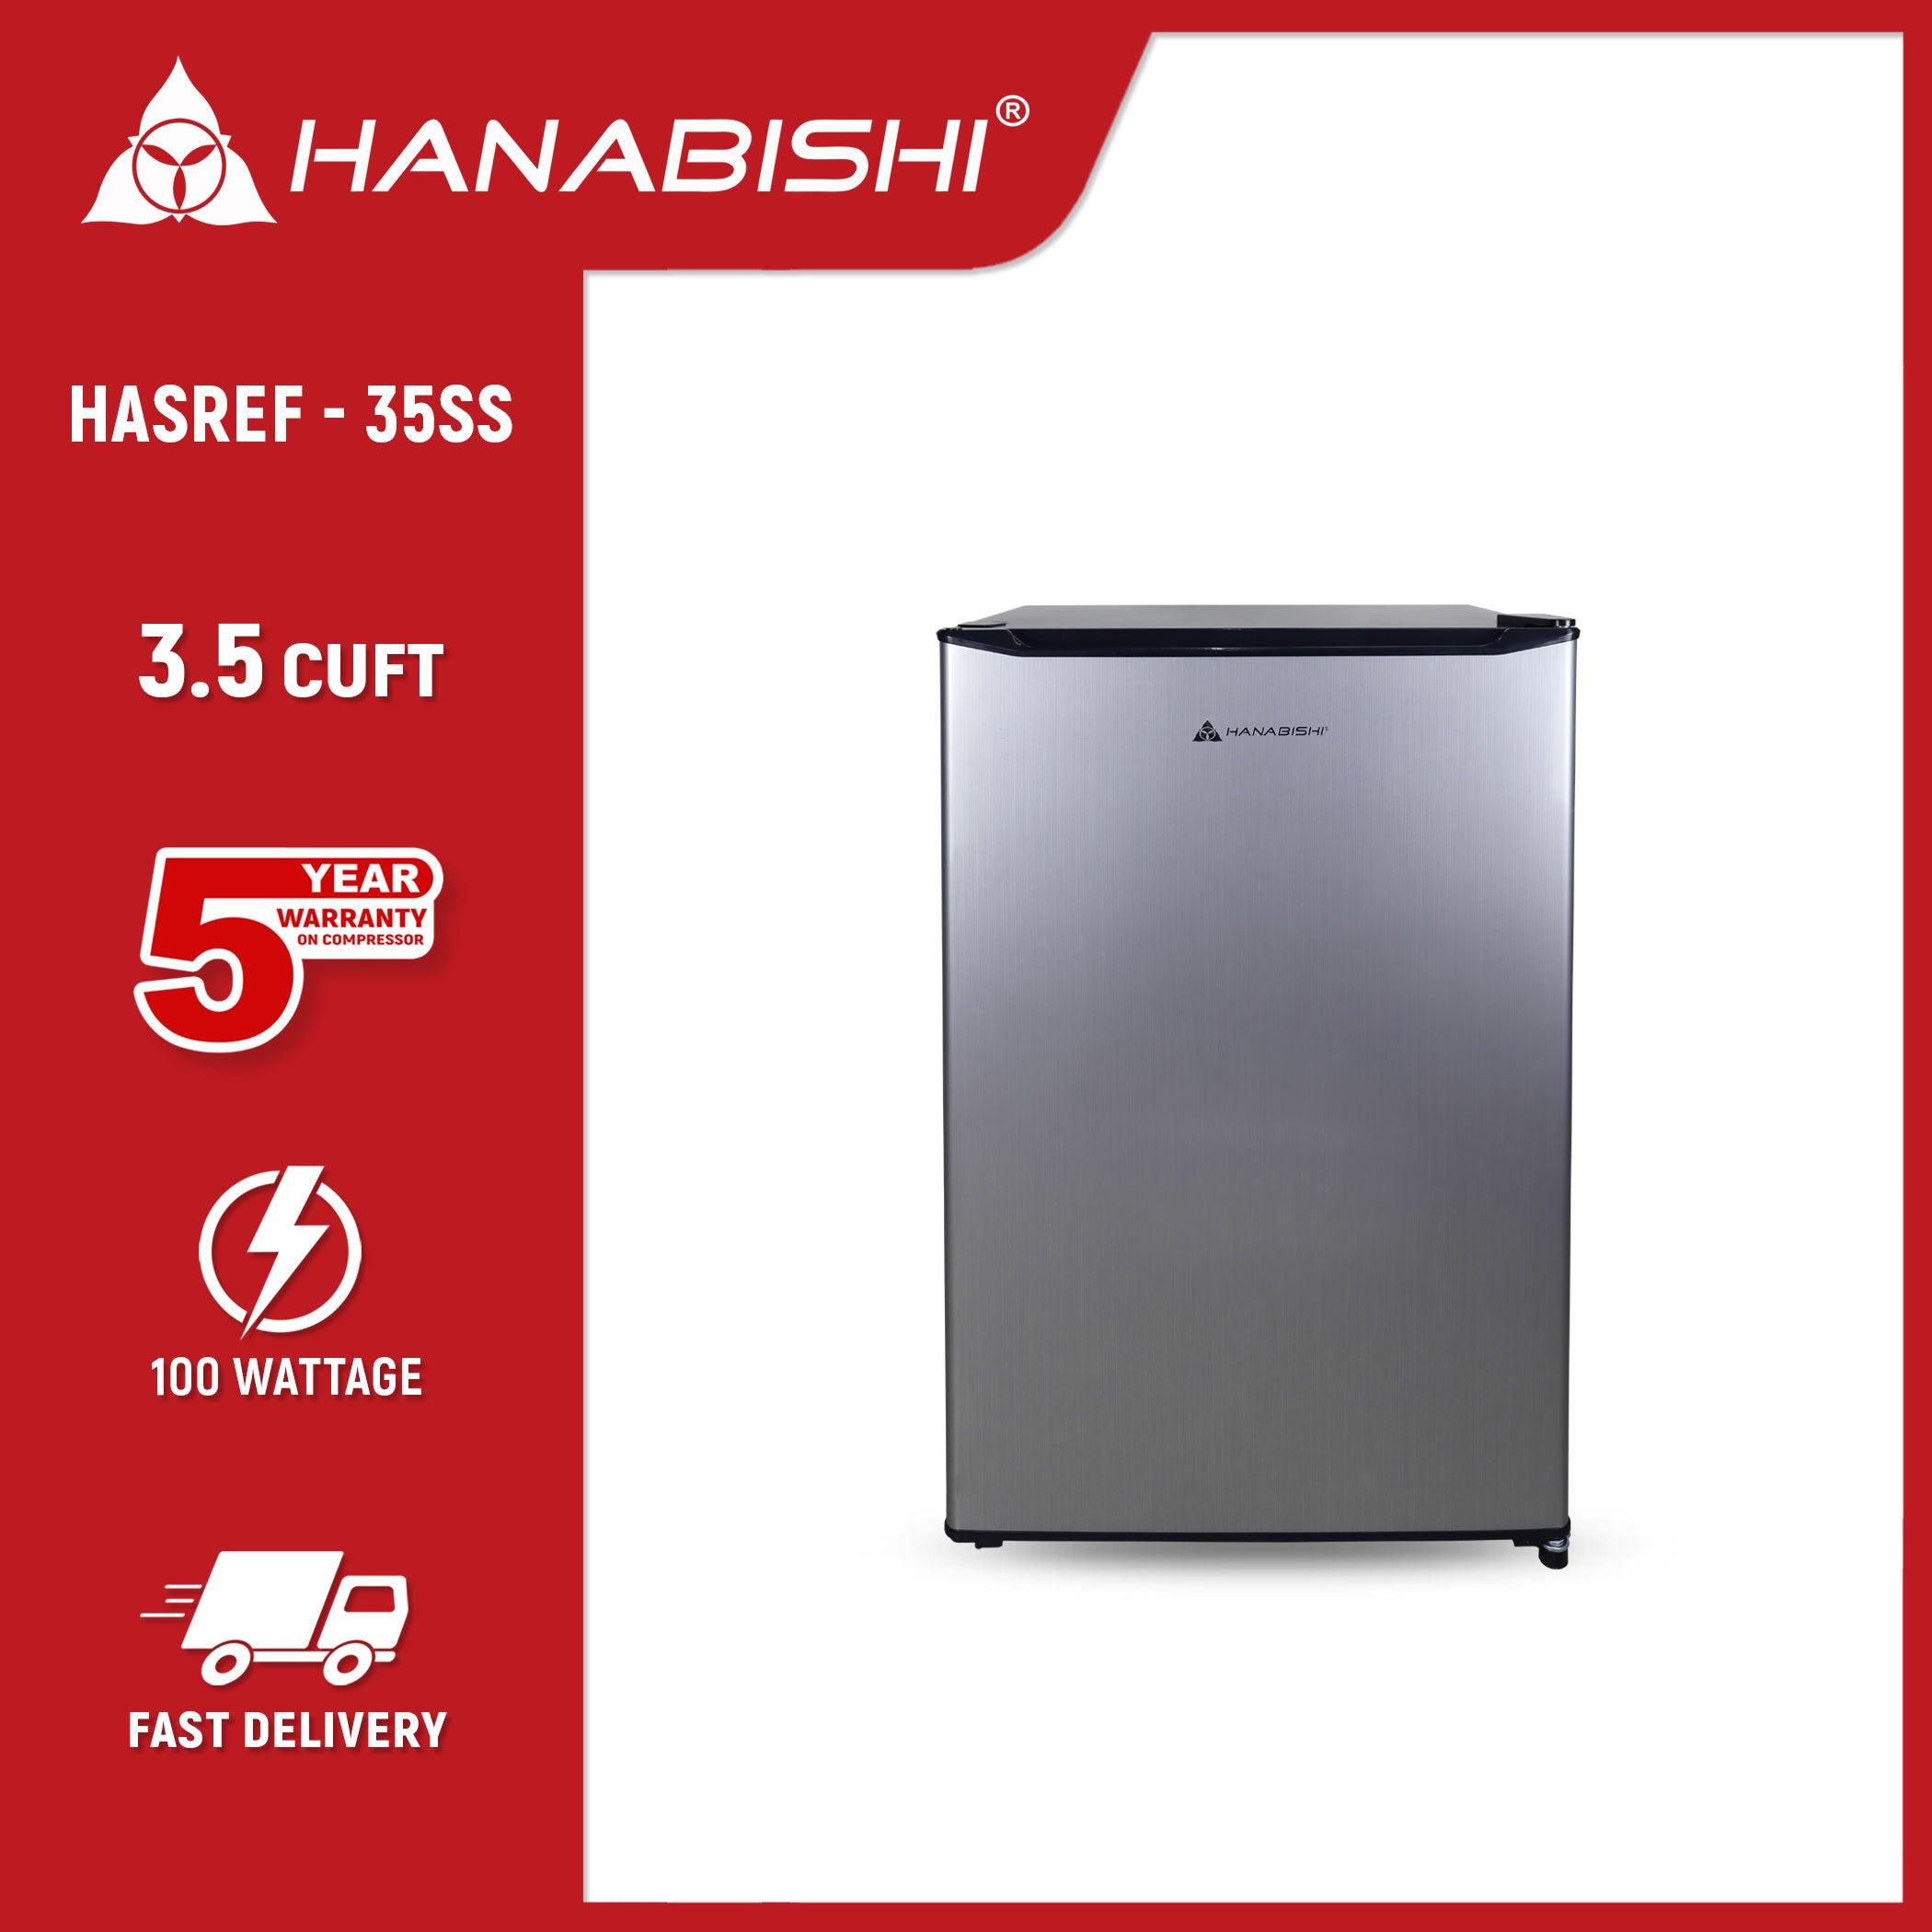 HANABISHI HASREF-33 3.3 cu.ft. Single Door Refrigerator Hanabishi